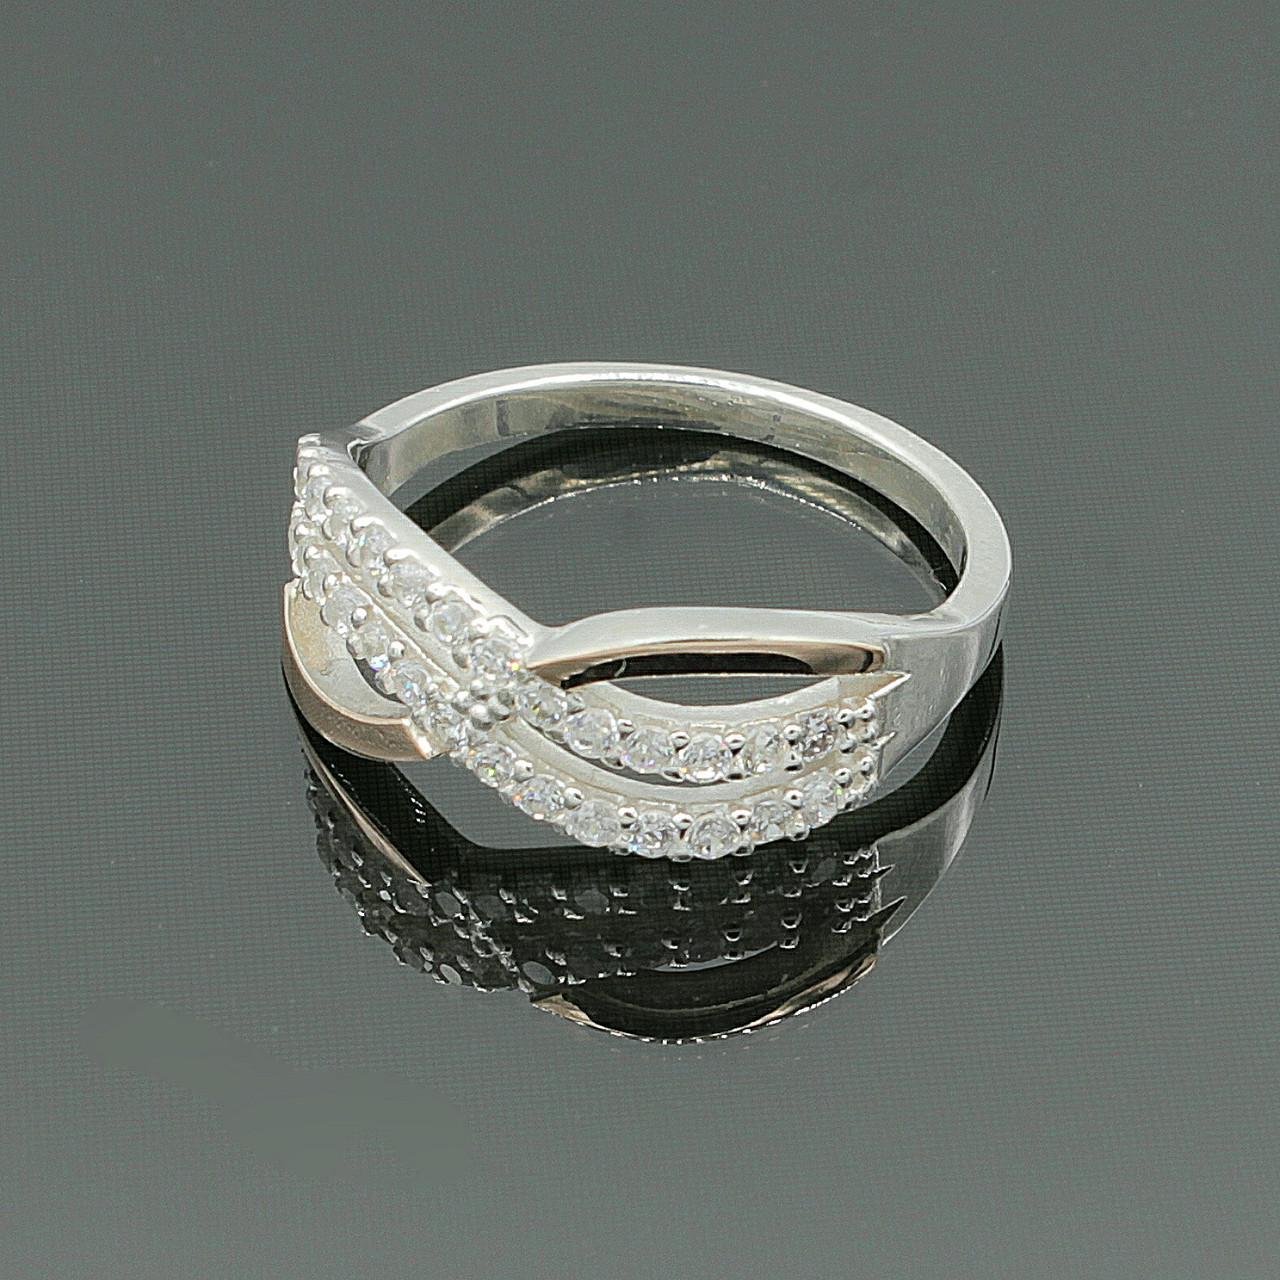 Обручальное кольцо с бриллиантом золотые купить киев | Обручальные кольца, Кольца для пары, Кольца